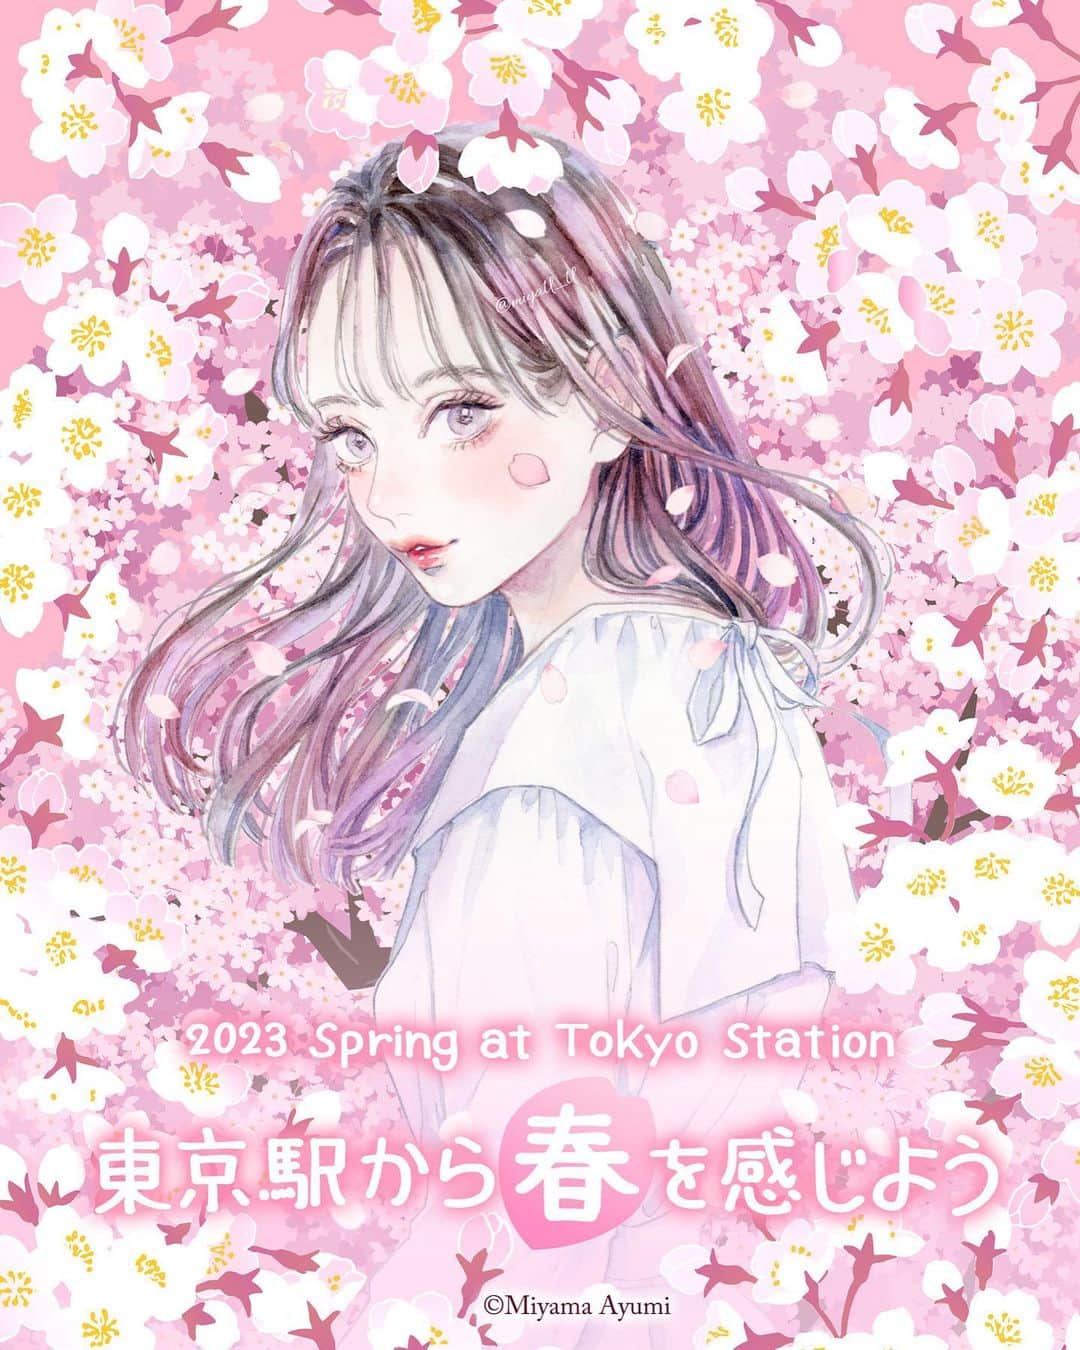 miya(ミヤマアユミ)のインスタグラム：「JR東京駅で開催される、春フェアのメインビジュアルを担当しました🌸  『東京駅から春を感じよう 2023 Spring at Tokyo Station』 3月27日〜4月9日まで🌸 東京駅 @tokyostationcity   桜と女性の絵で東京駅を彩らせて頂きます。 東京駅が桜いっぱいの空間になっています🌸ご覧頂けましたら嬉しいです。  ポストカードのプレゼント企画も開催されます。 詳細は「TOKYO STATION CITY」Webサイトをご確認ください。 http://www.tokyostationcity.com/news/20230322140000/ ※ポストカードの引き換えは4/7(金)〜4/9(日)の3日間です。  また、JR東京駅直結の「丸善丸の内本店」さんでは画集 #花kotoba🌸 のサイン本と色紙を置いて頂ける予定です📙イベントに合わせて桜の絵を描こうと思っています。3/28(火)入荷予定です。(遅れる可能性もあります。)  旅行やお買い物がてら東京駅にお立ち寄り頂けましたら嬉しいです🌷  #桜 #さくら #サクラ #spring #東京ステーションシティ #東京駅 #JR #旅行 #旅行コーデ  #artwork #watercolor #水彩 #透明水彩 #art #illust #illustration #draw #illustrator #イラスト #イラストレーター #手描き #手書き #アナログイラスト #花 #flower #flowers #ファッション #fashion #ファッションイラスト」